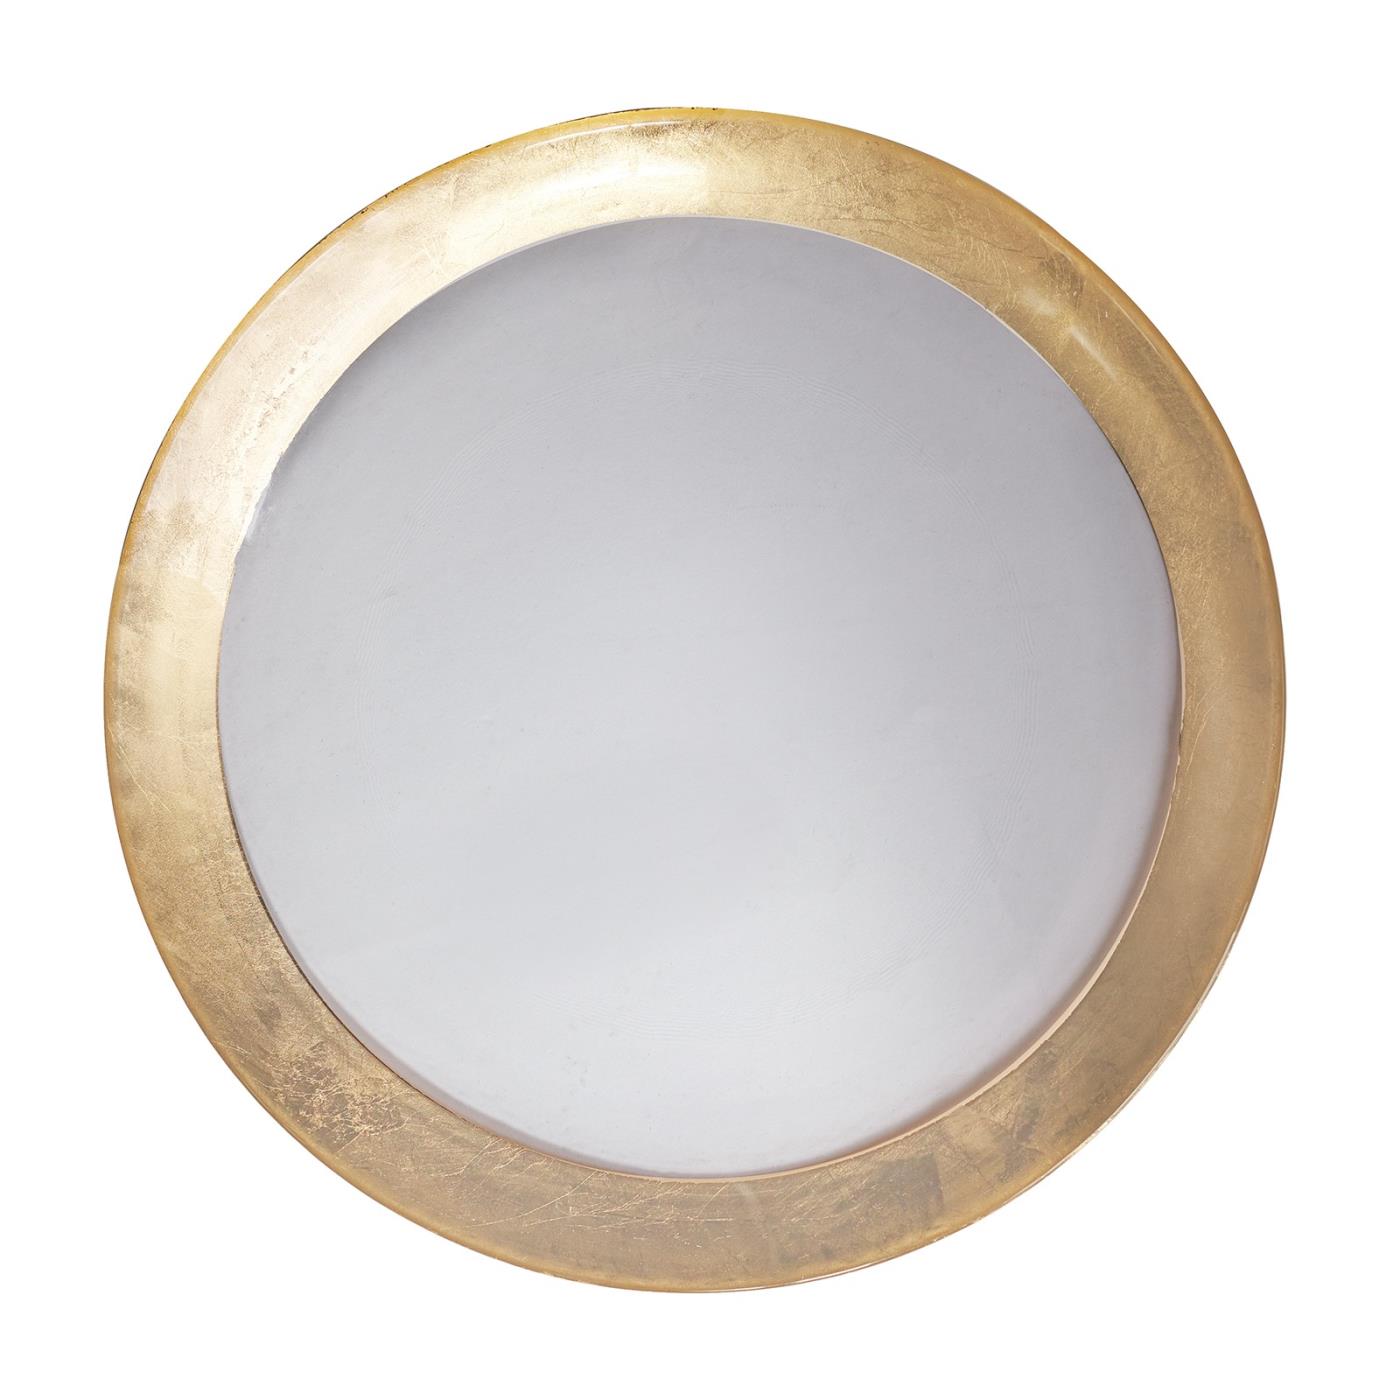 Gold Band Designer Plate - 11